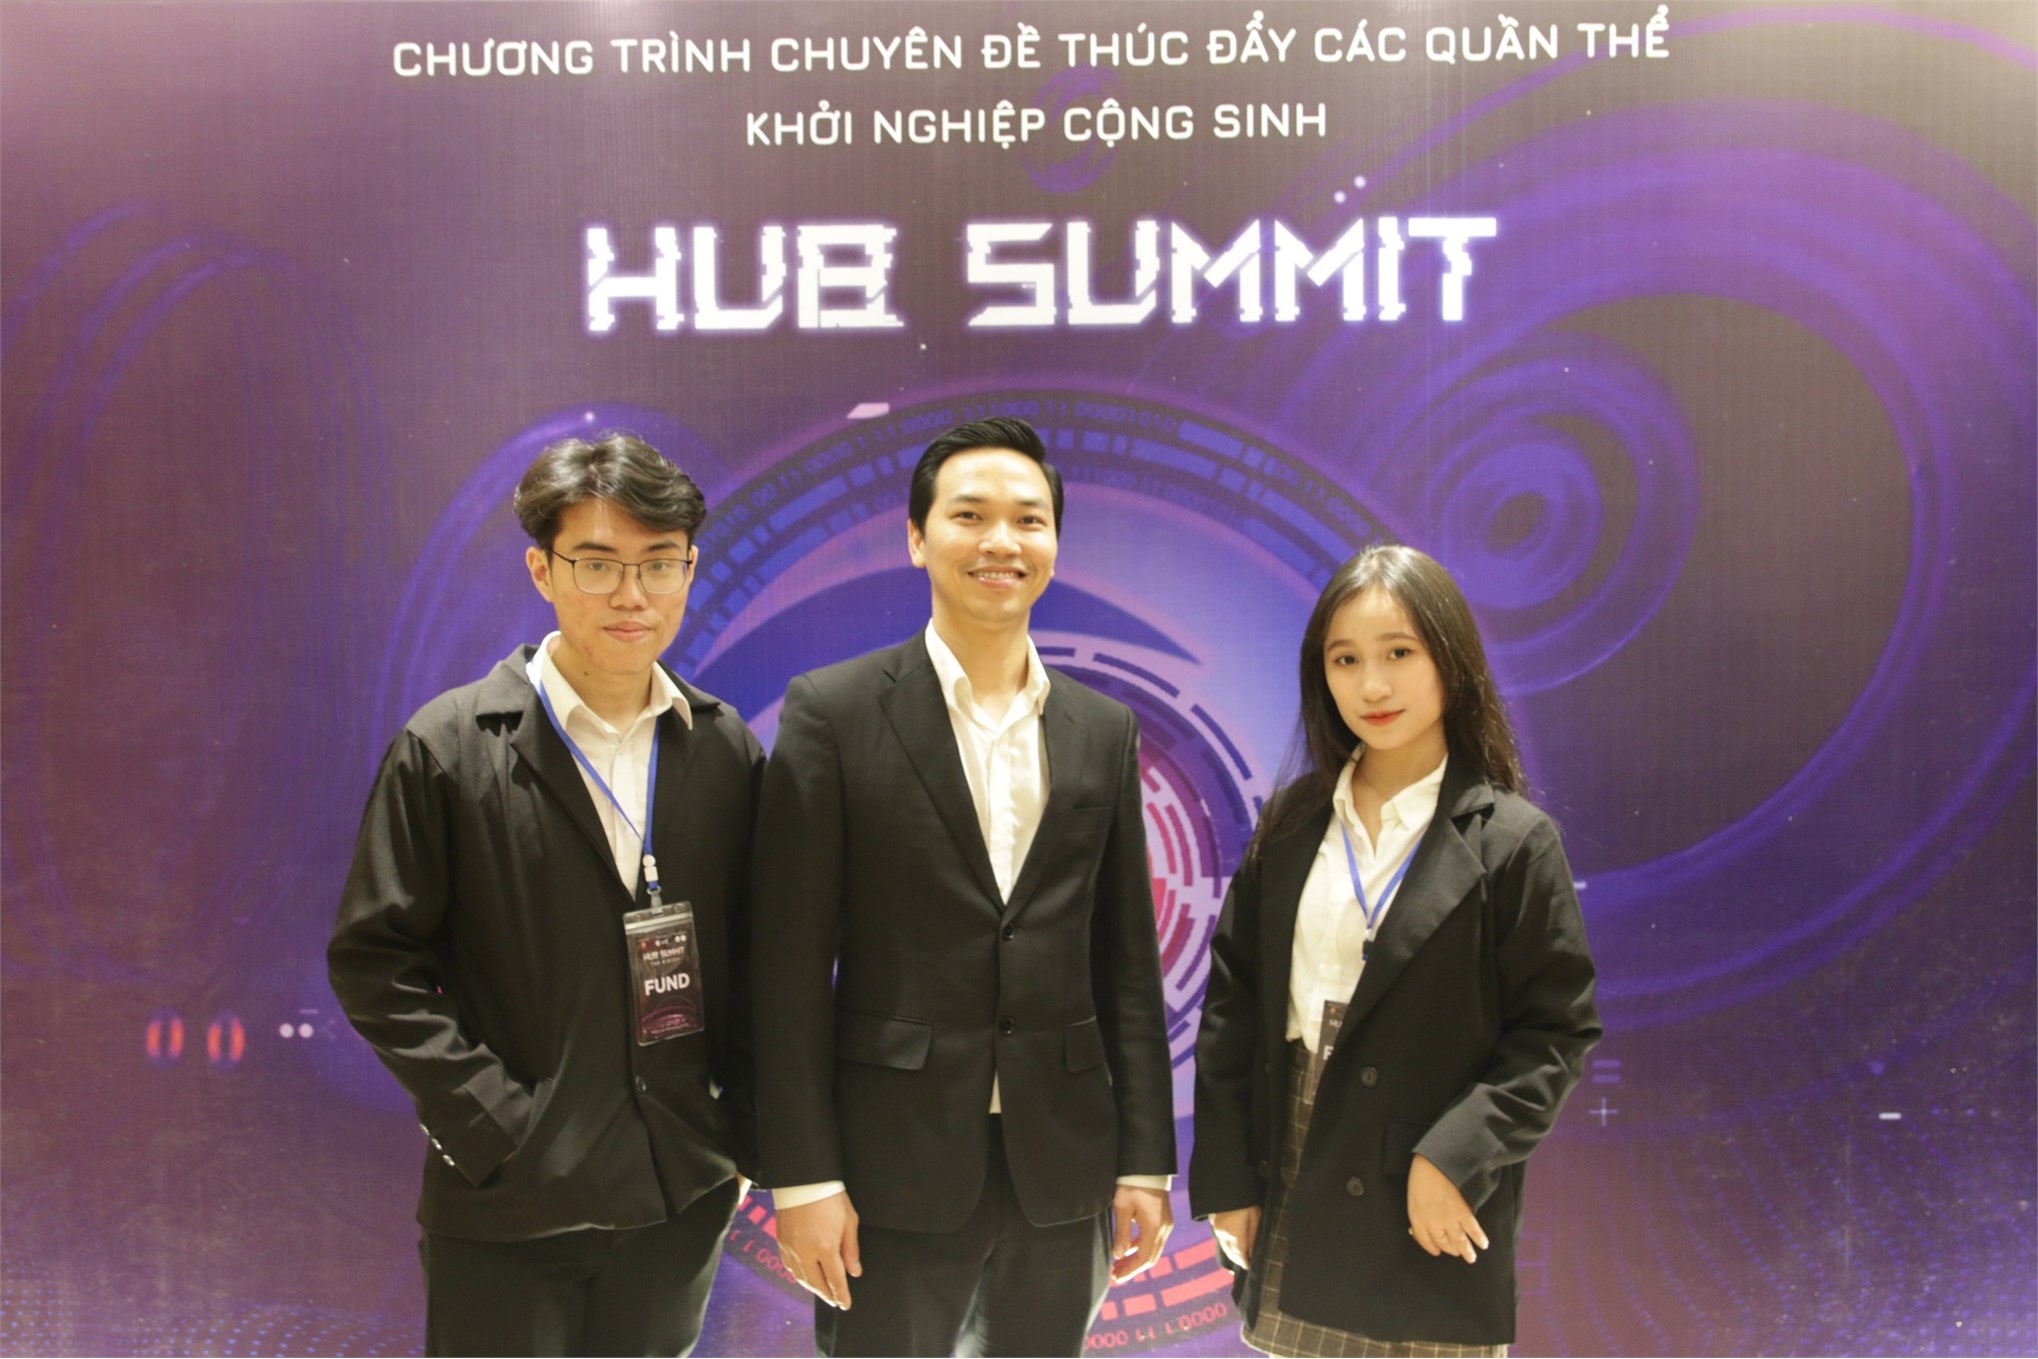 Ngày hội Khởi nghiệp HUB Summit với chủ đề “Khi công nghệ lên ngôi, hãy để nhãn quan nhạy bén làm chủ”